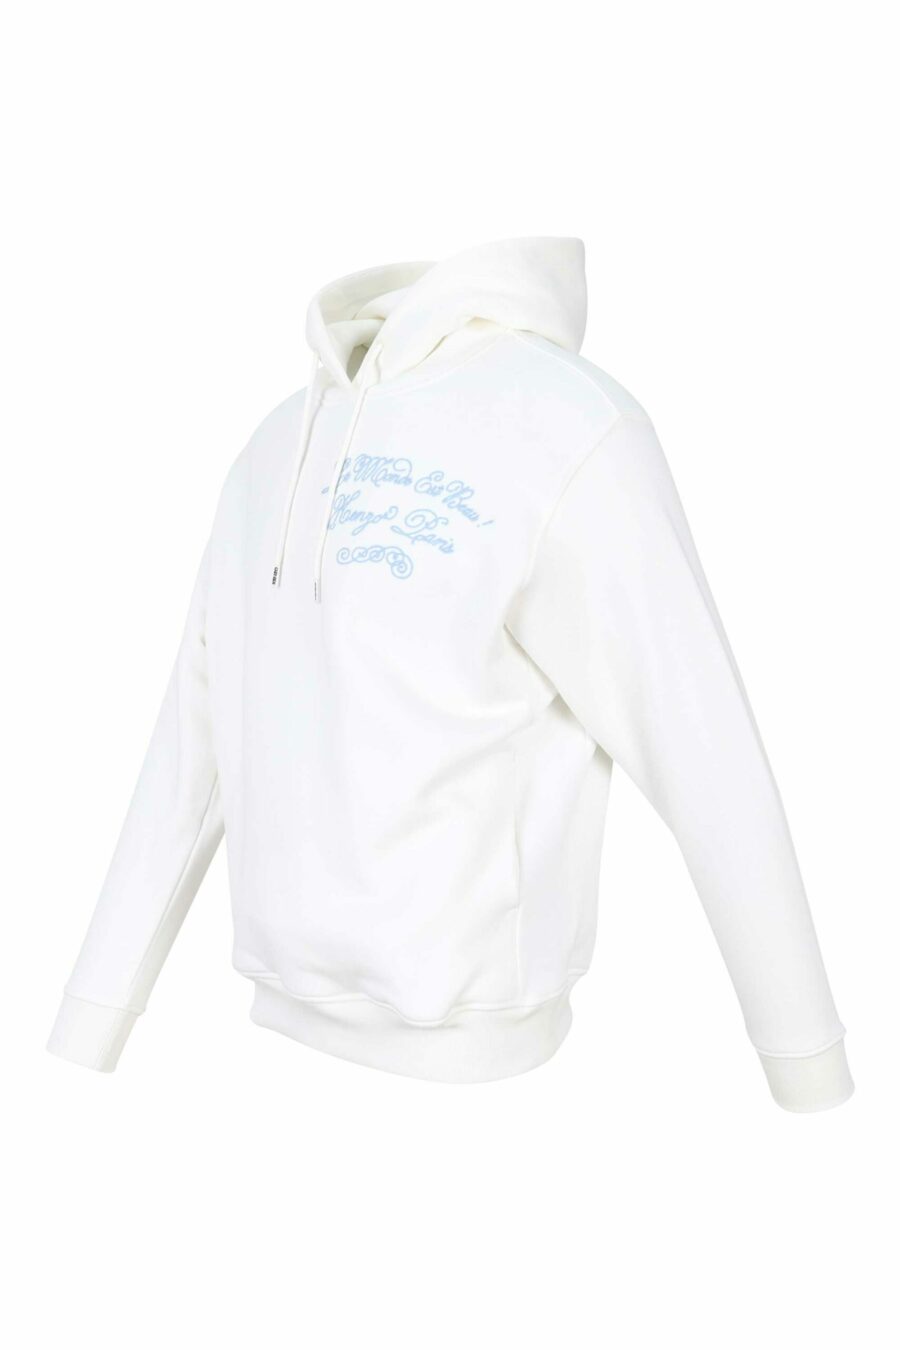 Sweat à capuche blanc avec mini logo "kenzo travel" - 3612230515765 1 1 à l'échelle